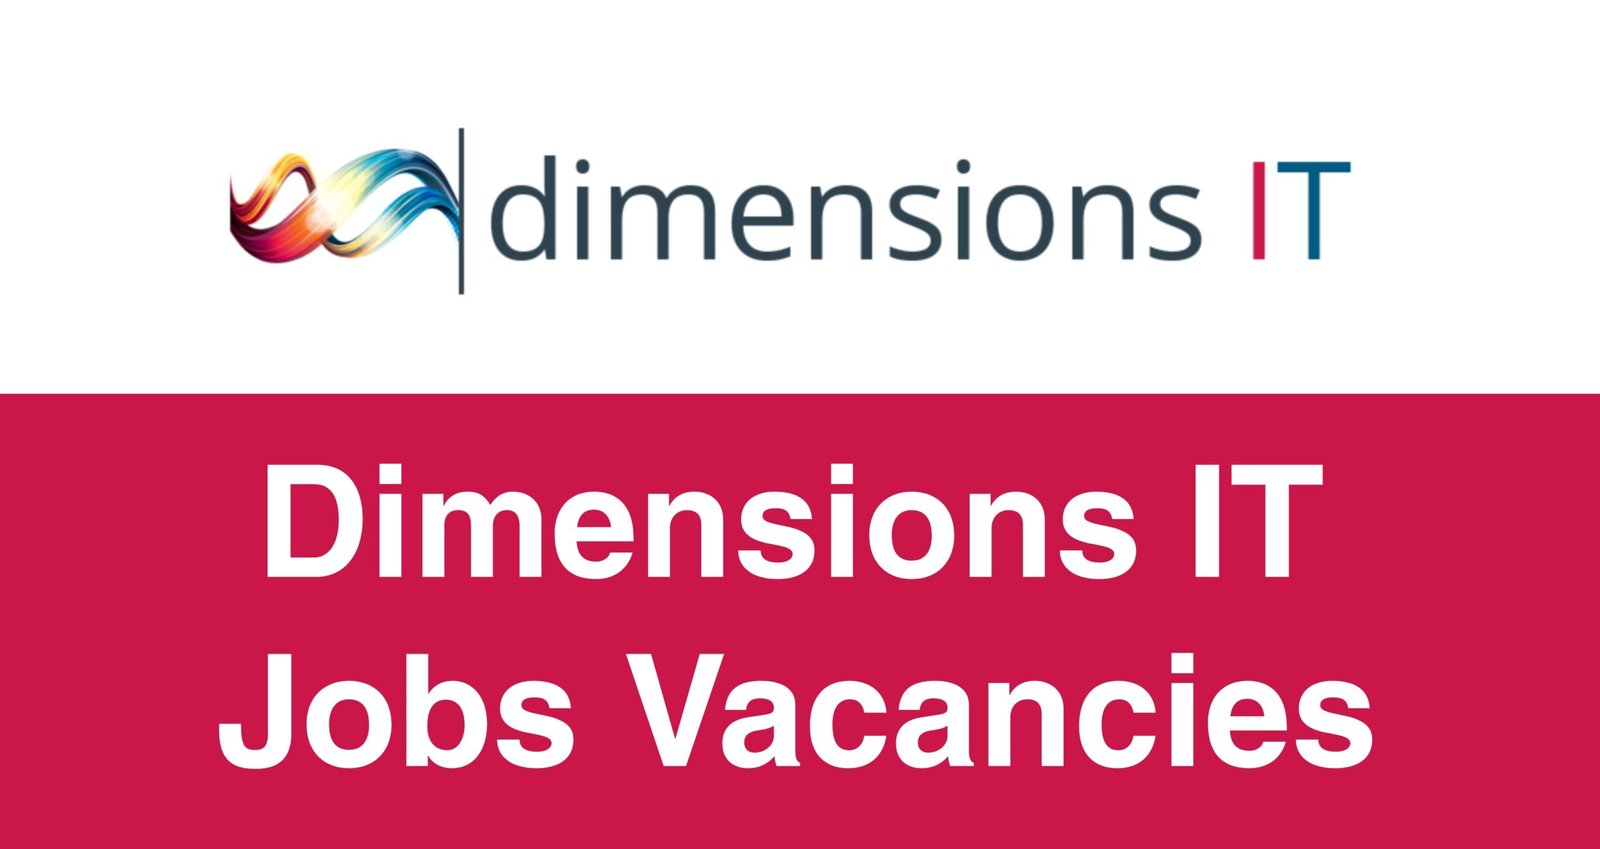 Dimensions IT Jobs Vacancies